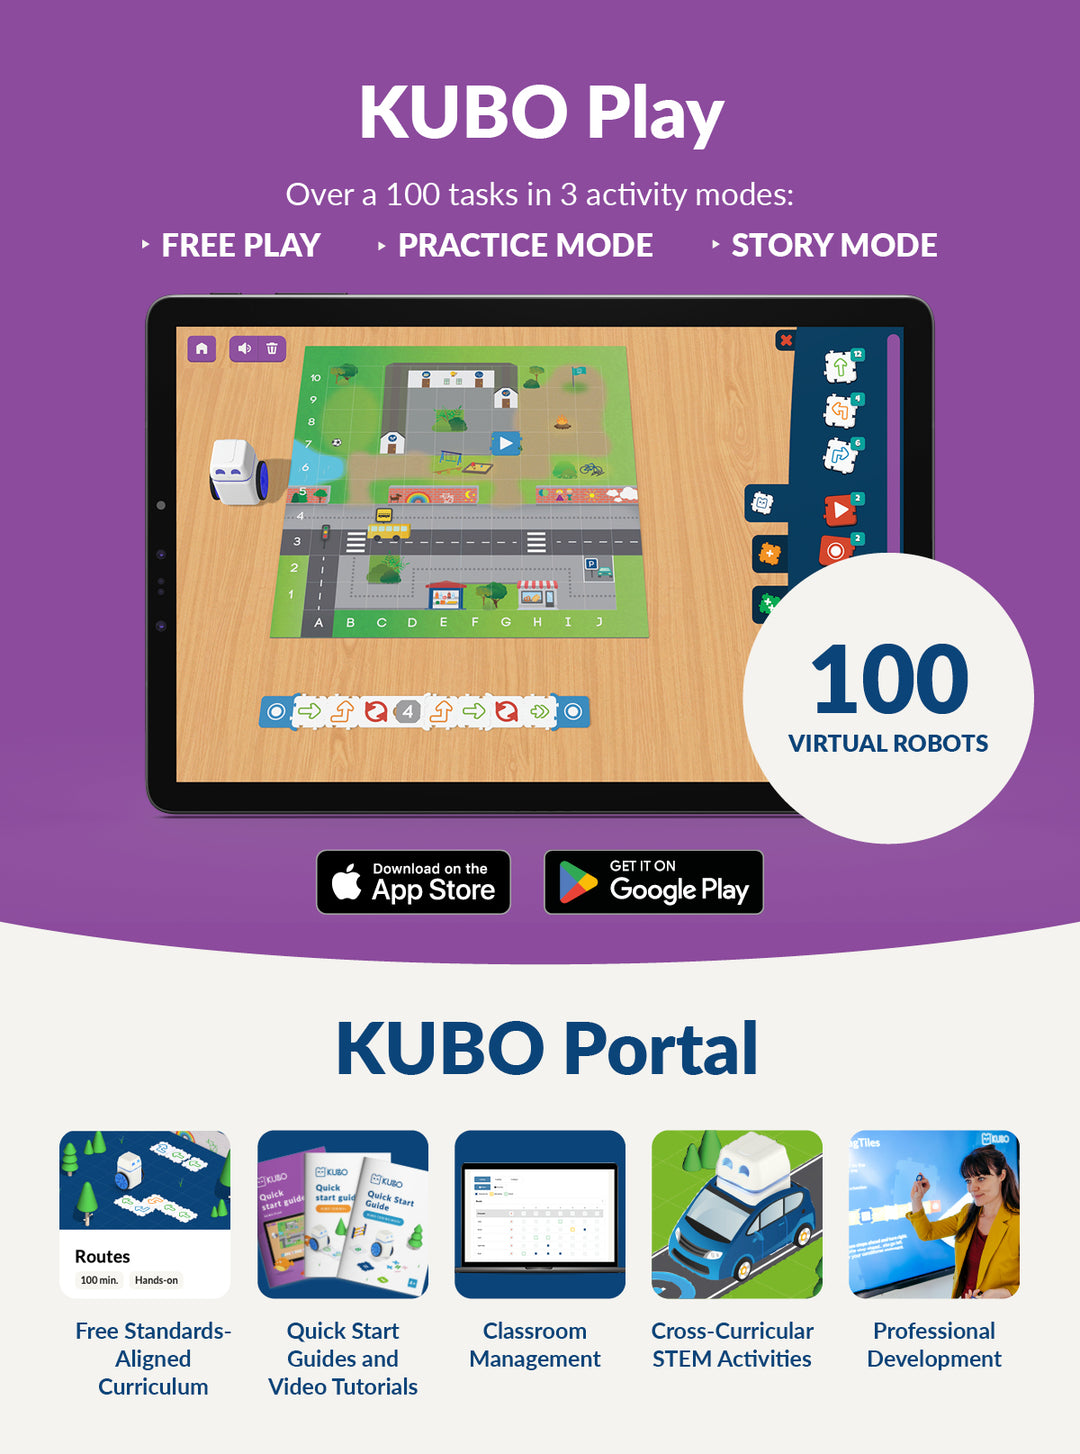 KUBO Play School